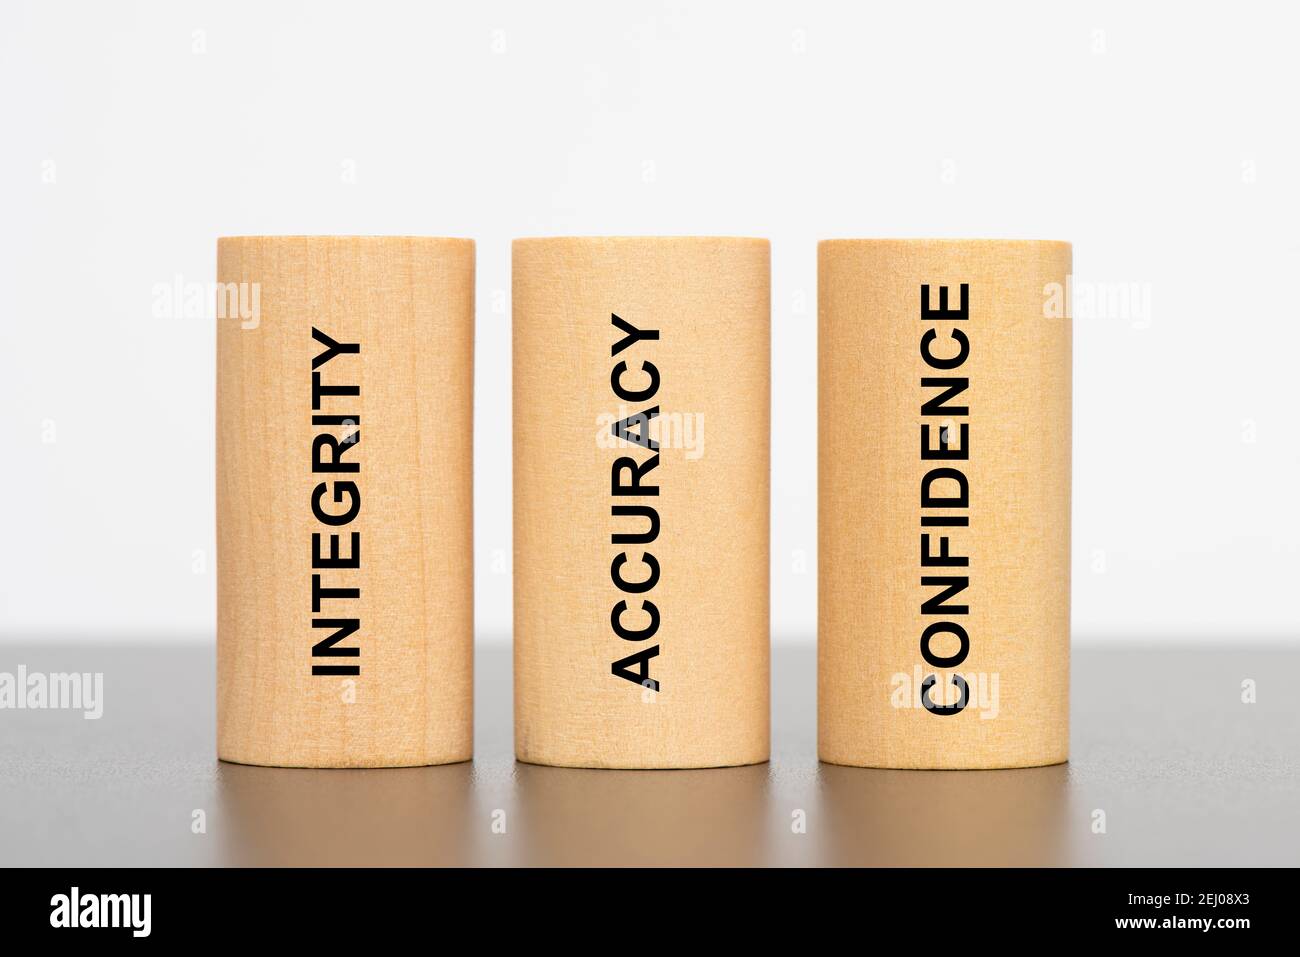 intégrité, précision et confiance imprimées sur trois piliers Banque D'Images